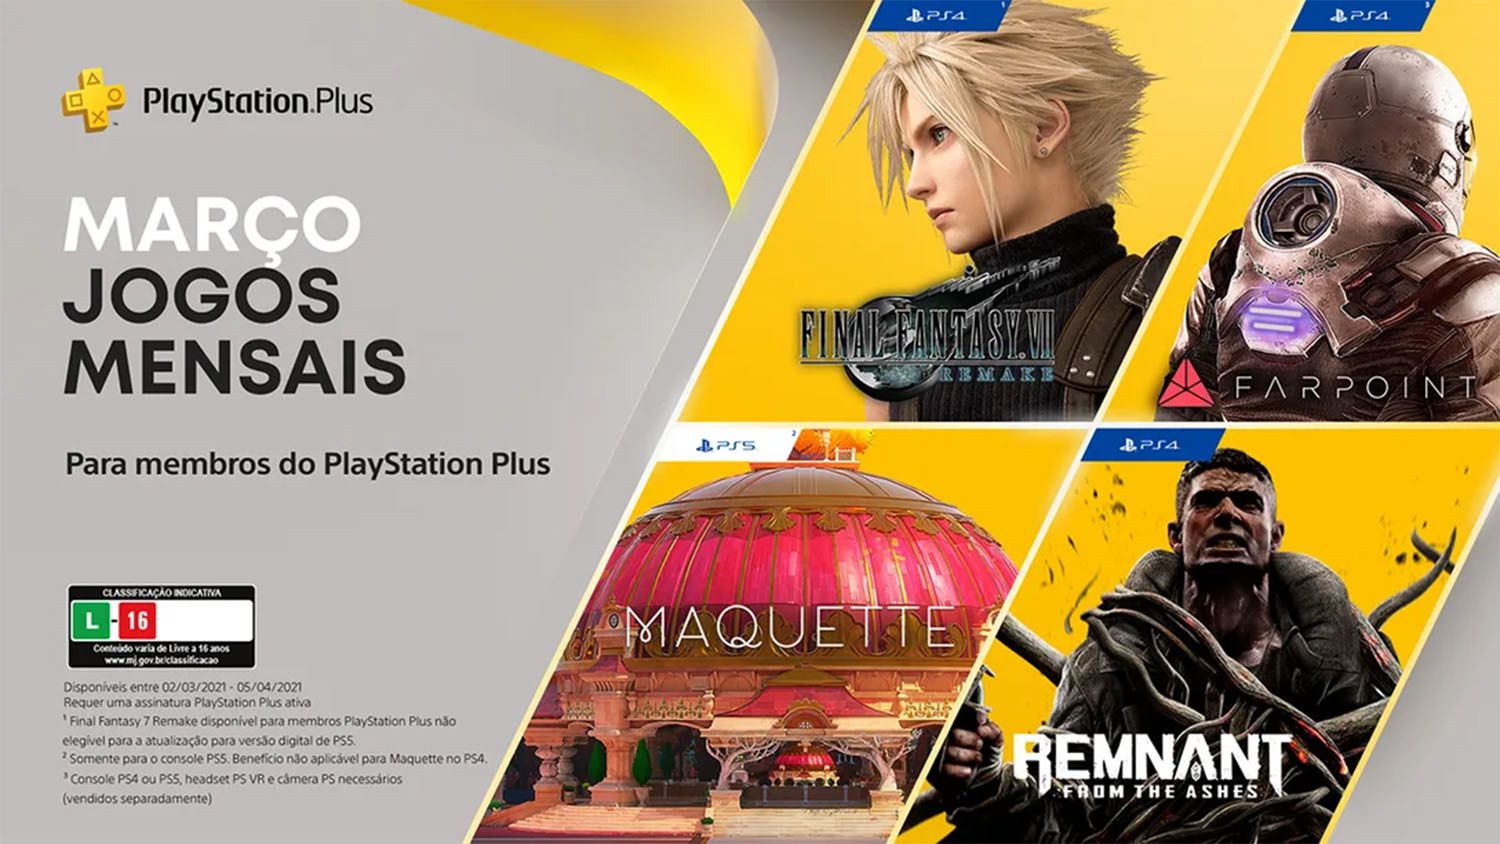 Maquette, um puzzle recursivo, é anunciado para PS4 e PS5